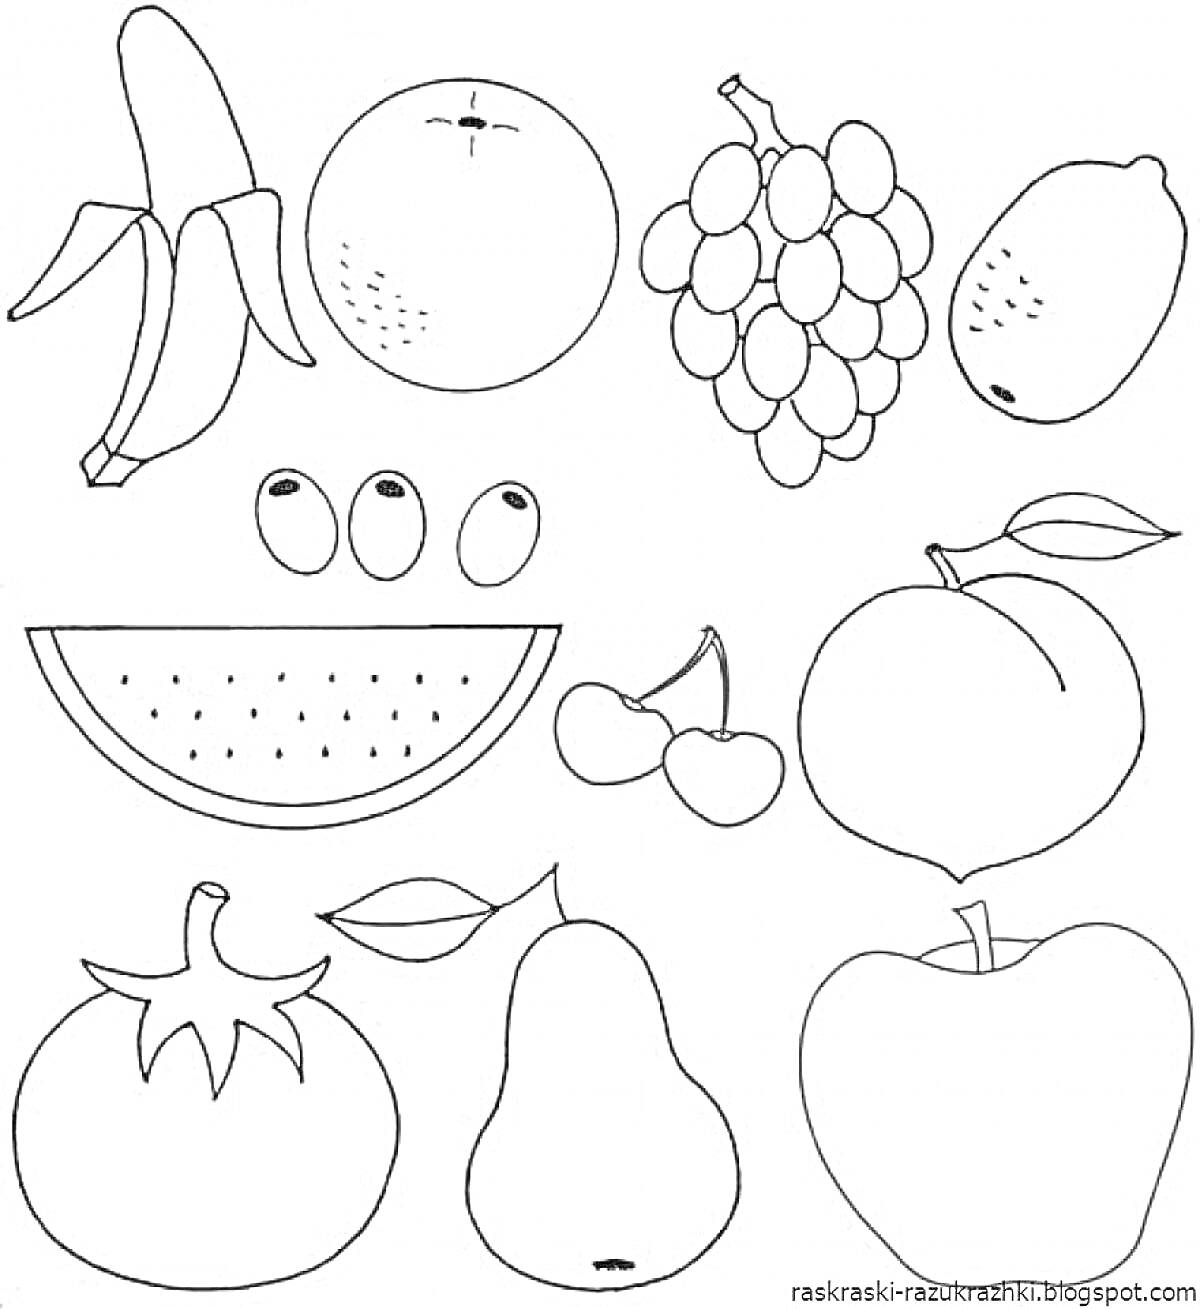 Раскраска раскраска с фруктами и овощами - банан, апельсин, виноград, манго, три ягоды (возможно, черники), арбуз, две вишенки, персик, помидор, листок, груша, яблоко